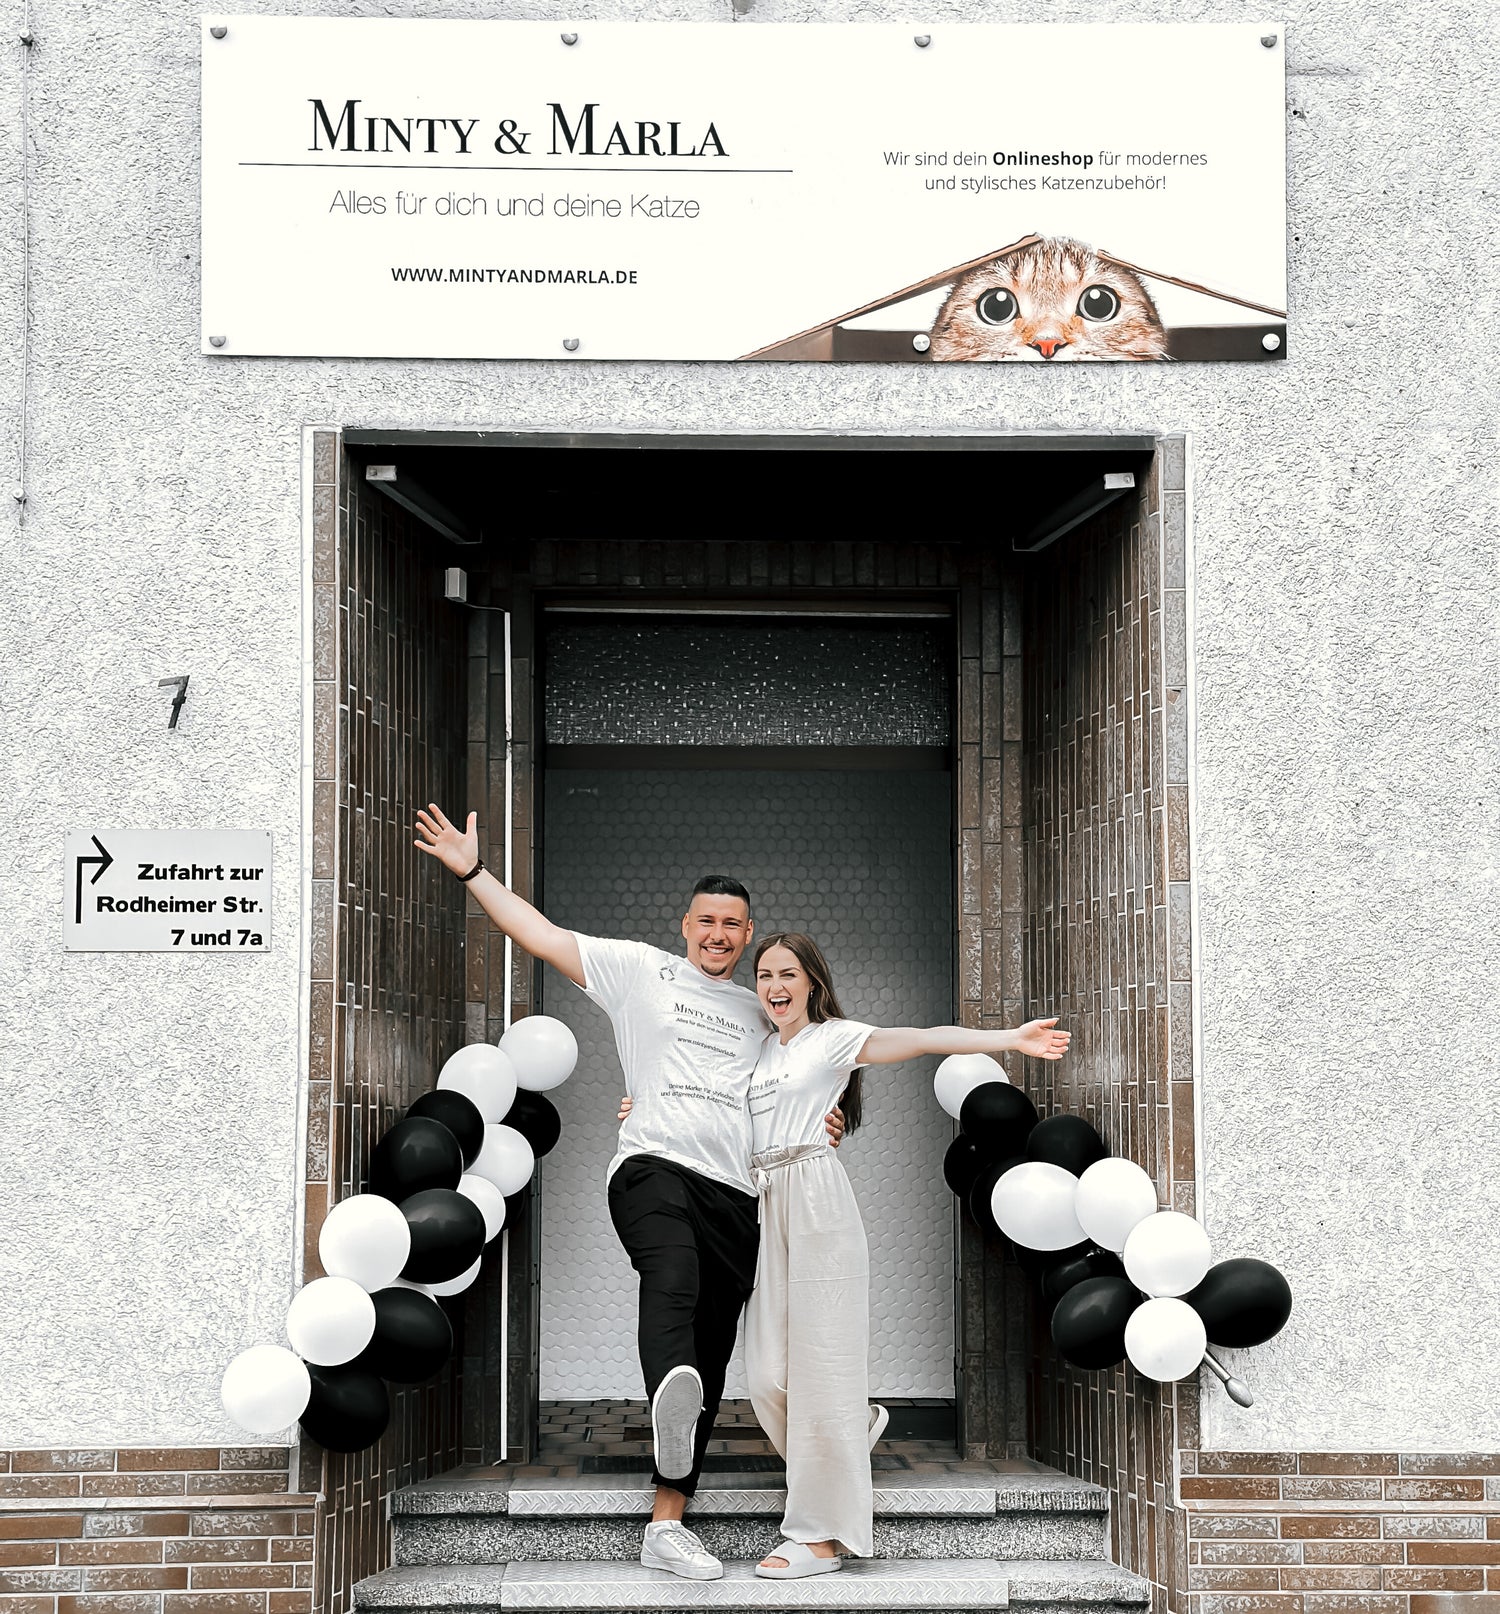 Die Gründer, Marleen und Marc, vor dem Eingang zum Versandlager der Katzenprodukte von ihrer Marke "Minty & Marla - Alles für dich und deine Katze"